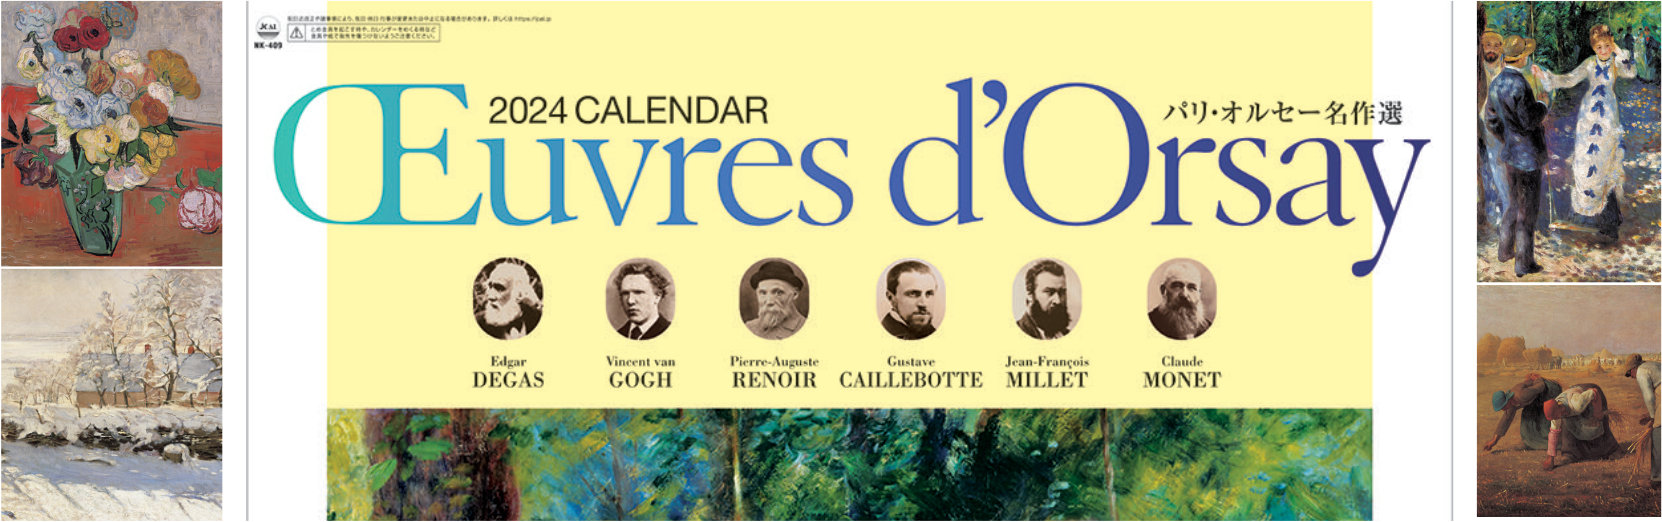 パリ・オルセー名作選 2024年版カレンダー